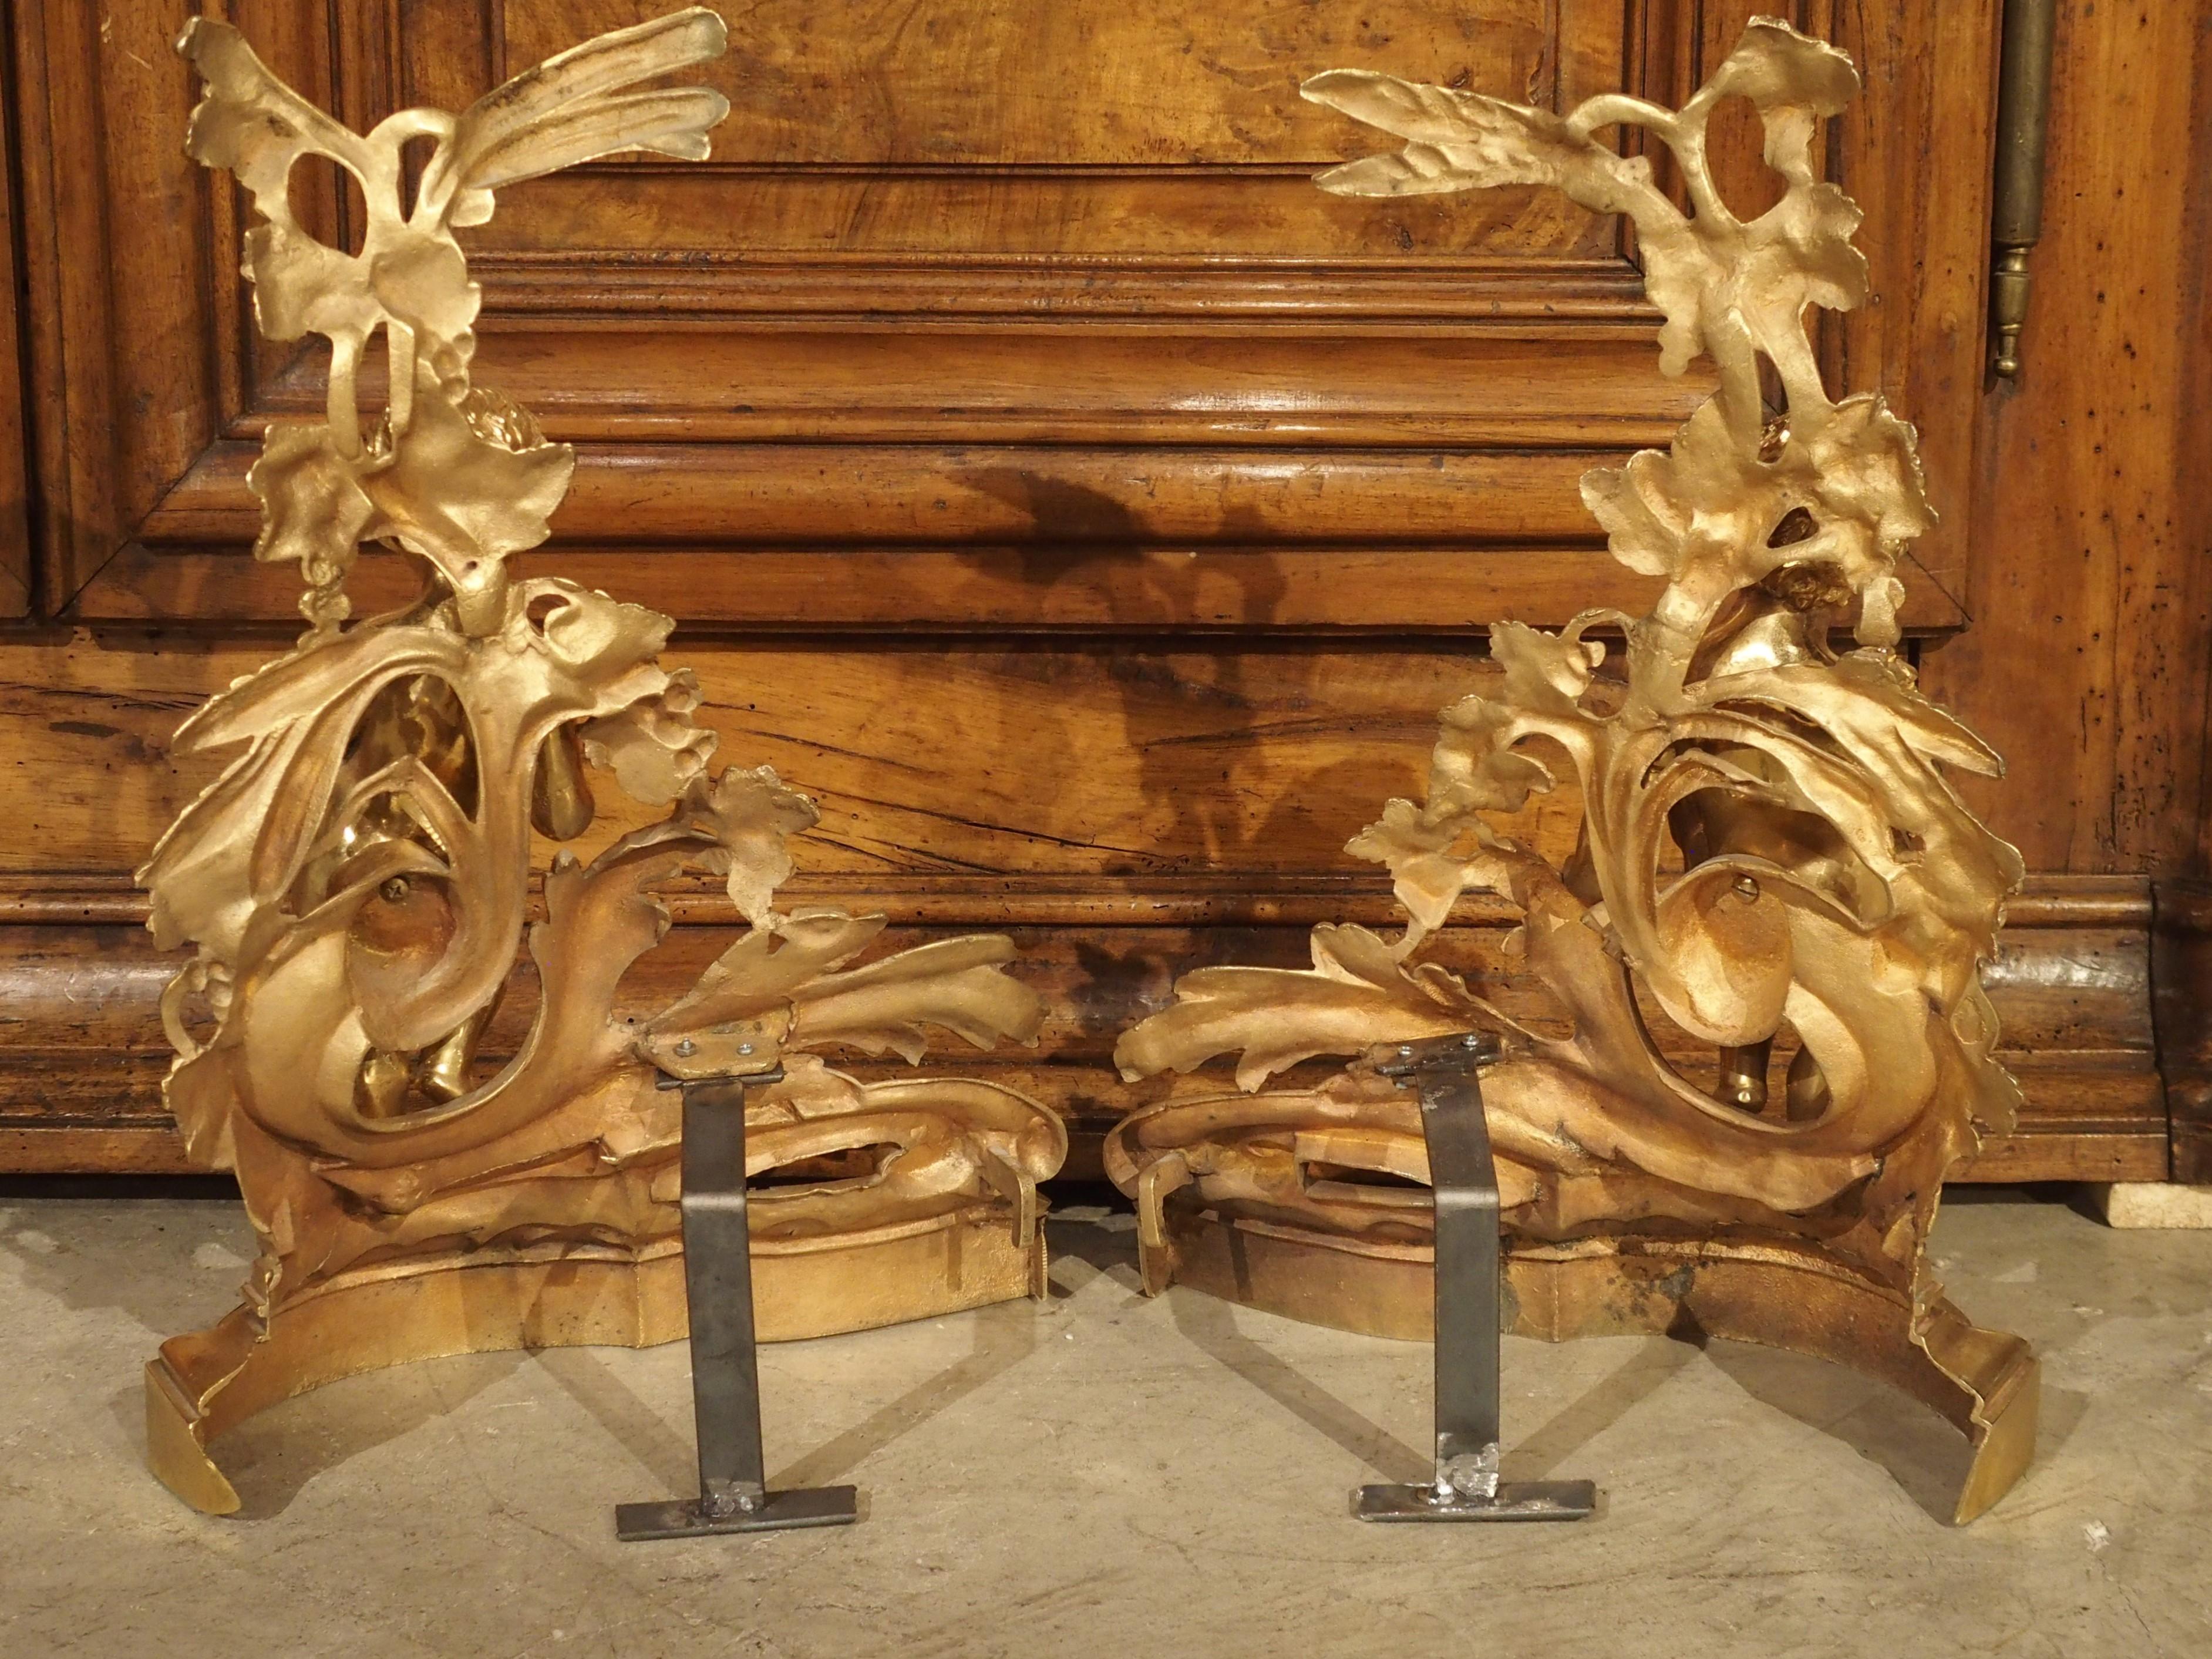 Dies ist ein atemberaubendes Paar von Französisch Kamin Bronze doré chenets aus den 1800er Jahren. Jedes Chenet zeigt einen Putto, der auf einem großen Bündel eingerollter Akanthusblätter steht. Unter den Blättern befinden sich dicke Sockel mit